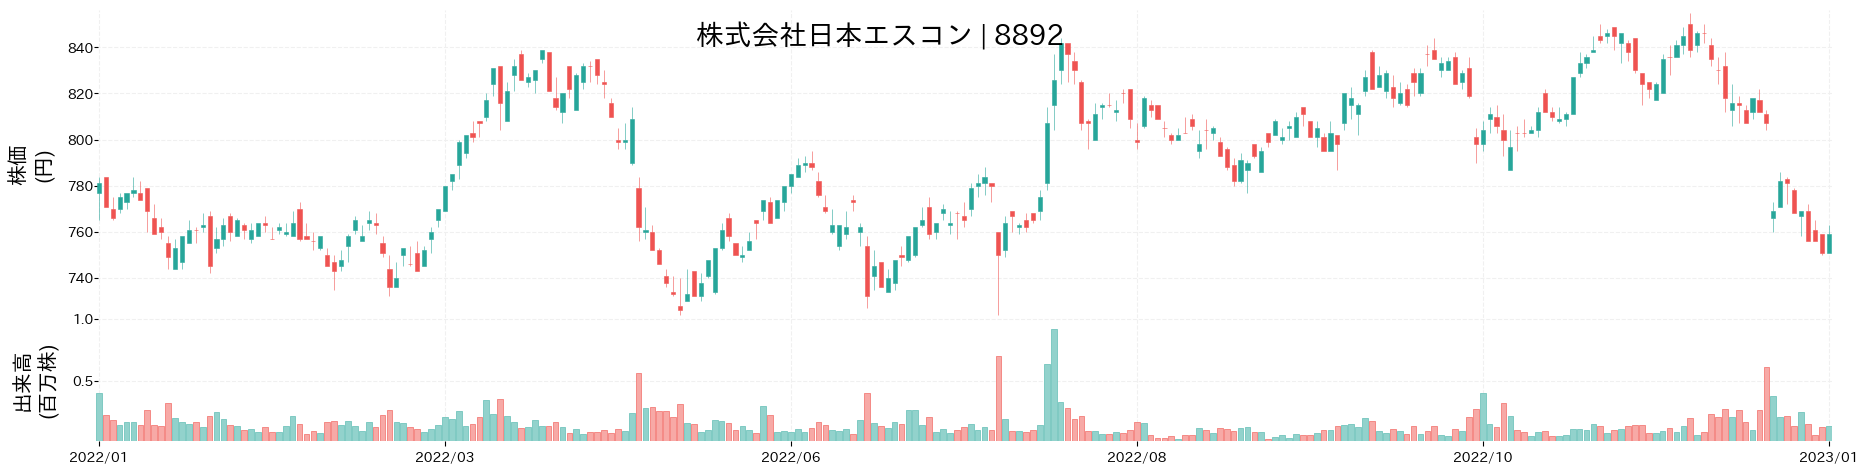 日本エスコンの株価推移(2022)